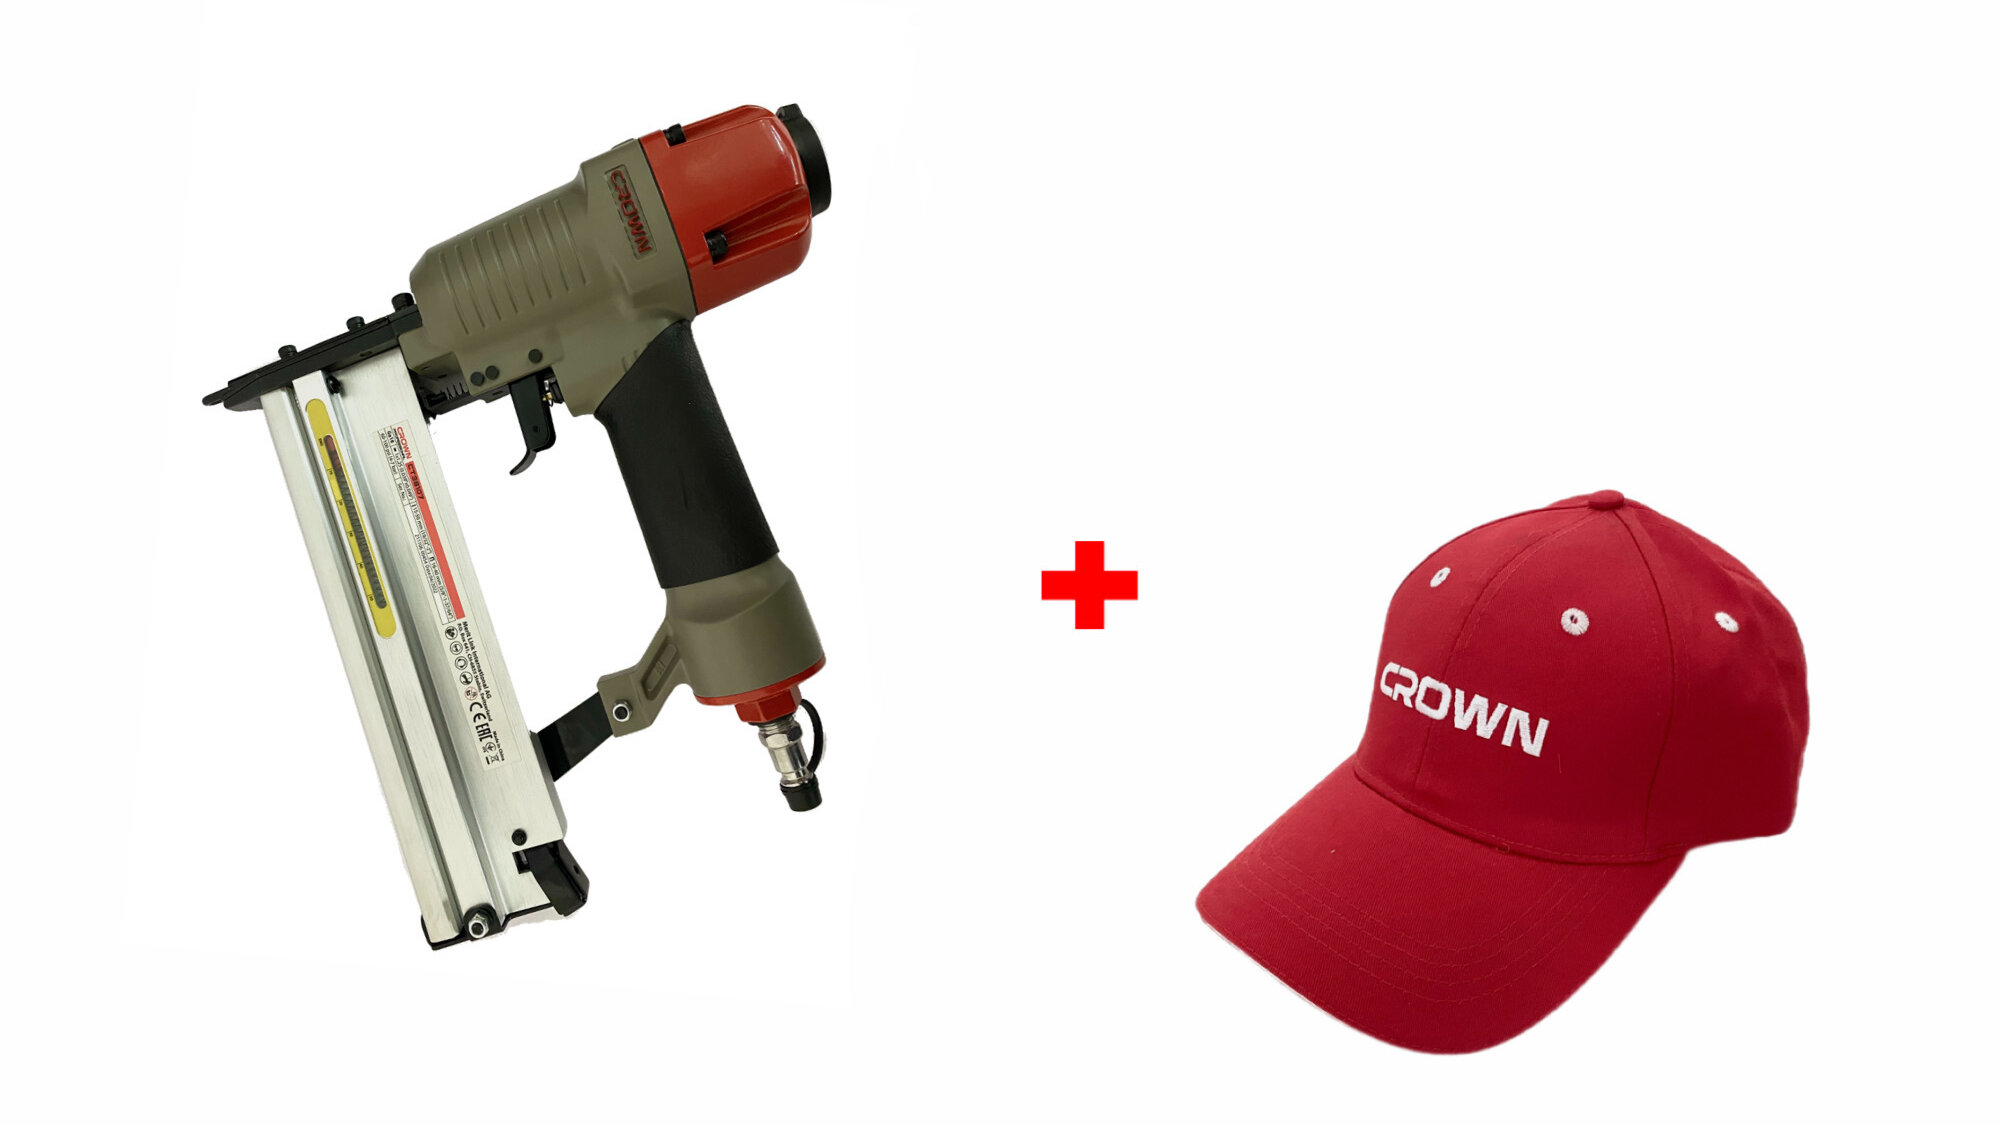 Пневматический гвоздезабивочный пистолет CROWN с кепкой в подарок